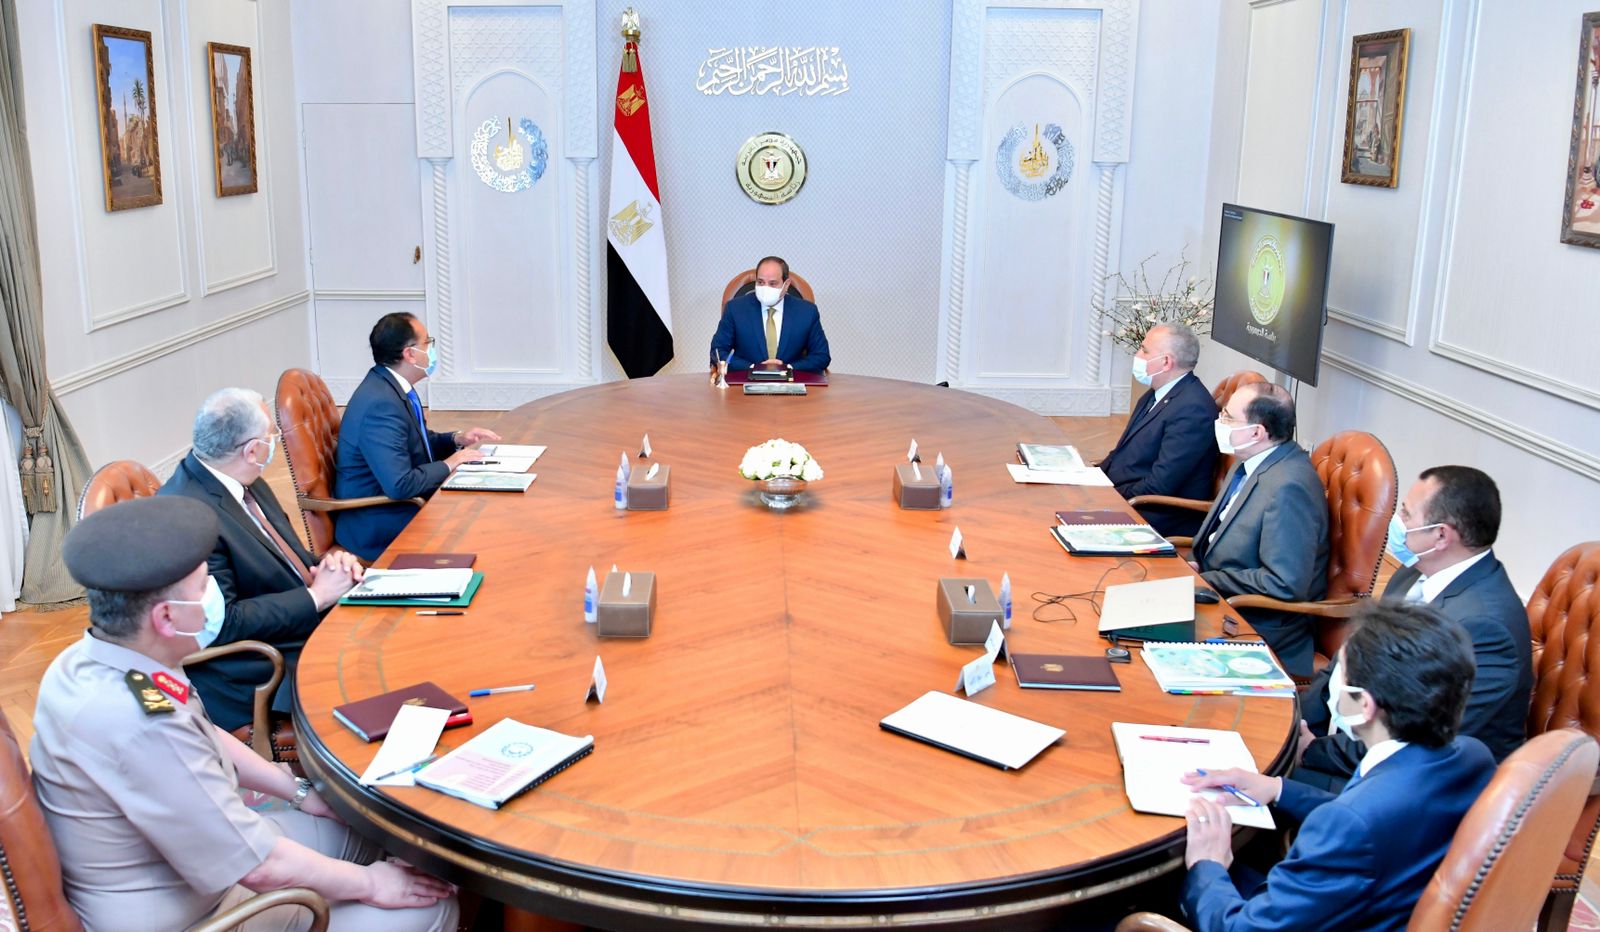 الرئيس السيسي يوجه بالدراسة المدققة لأي تحديات مستجدة تواجه مشروع الريف المصرى